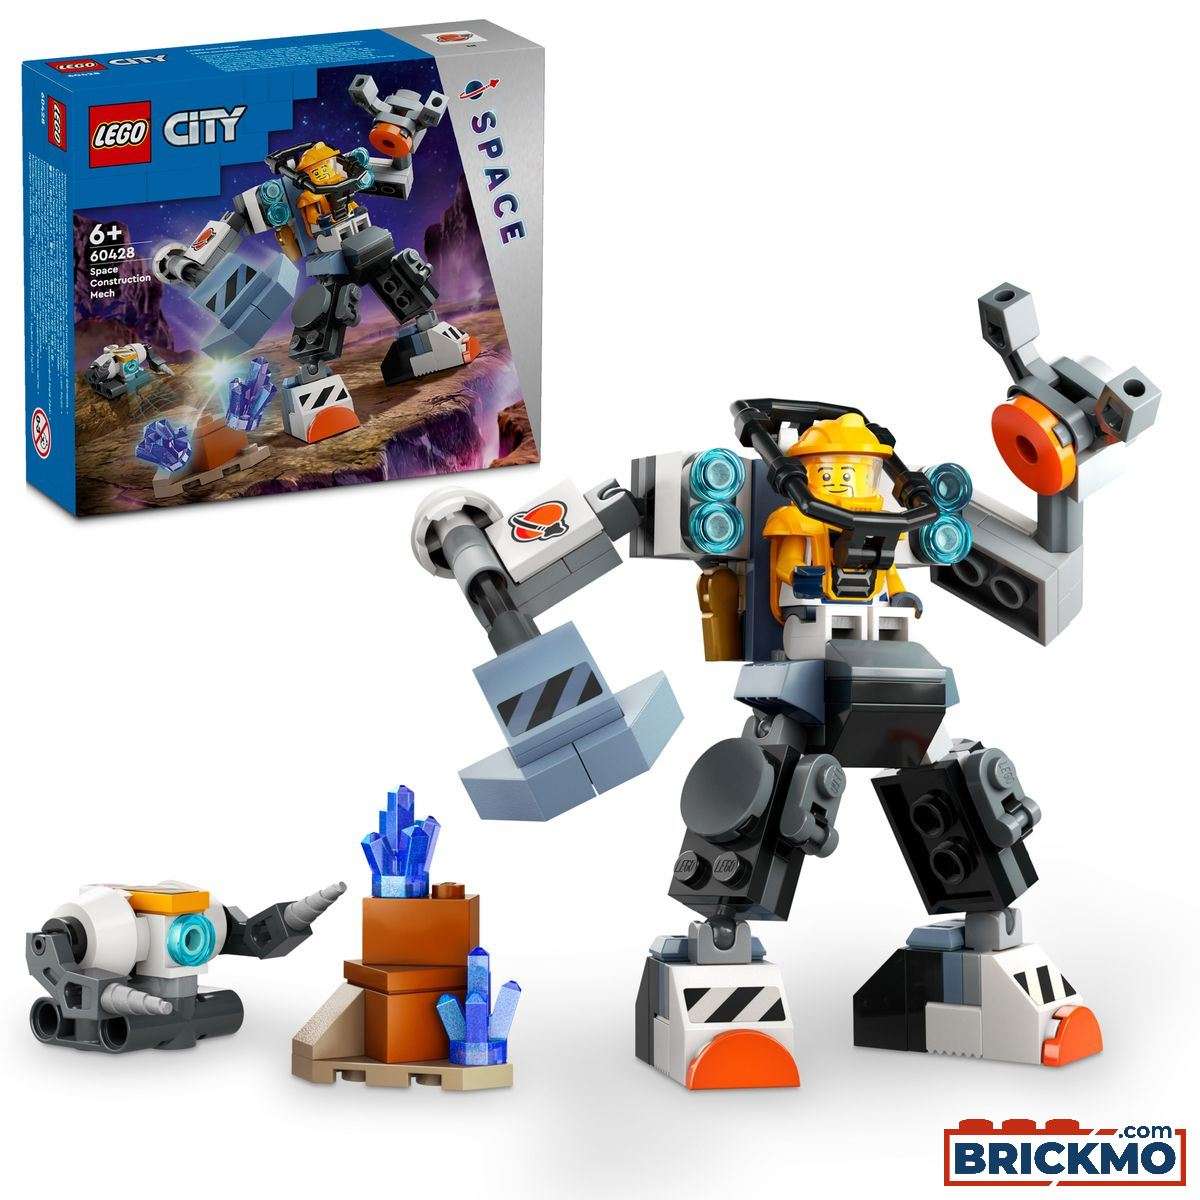 LEGO City 60428 Robô de Construção Espacial 60428